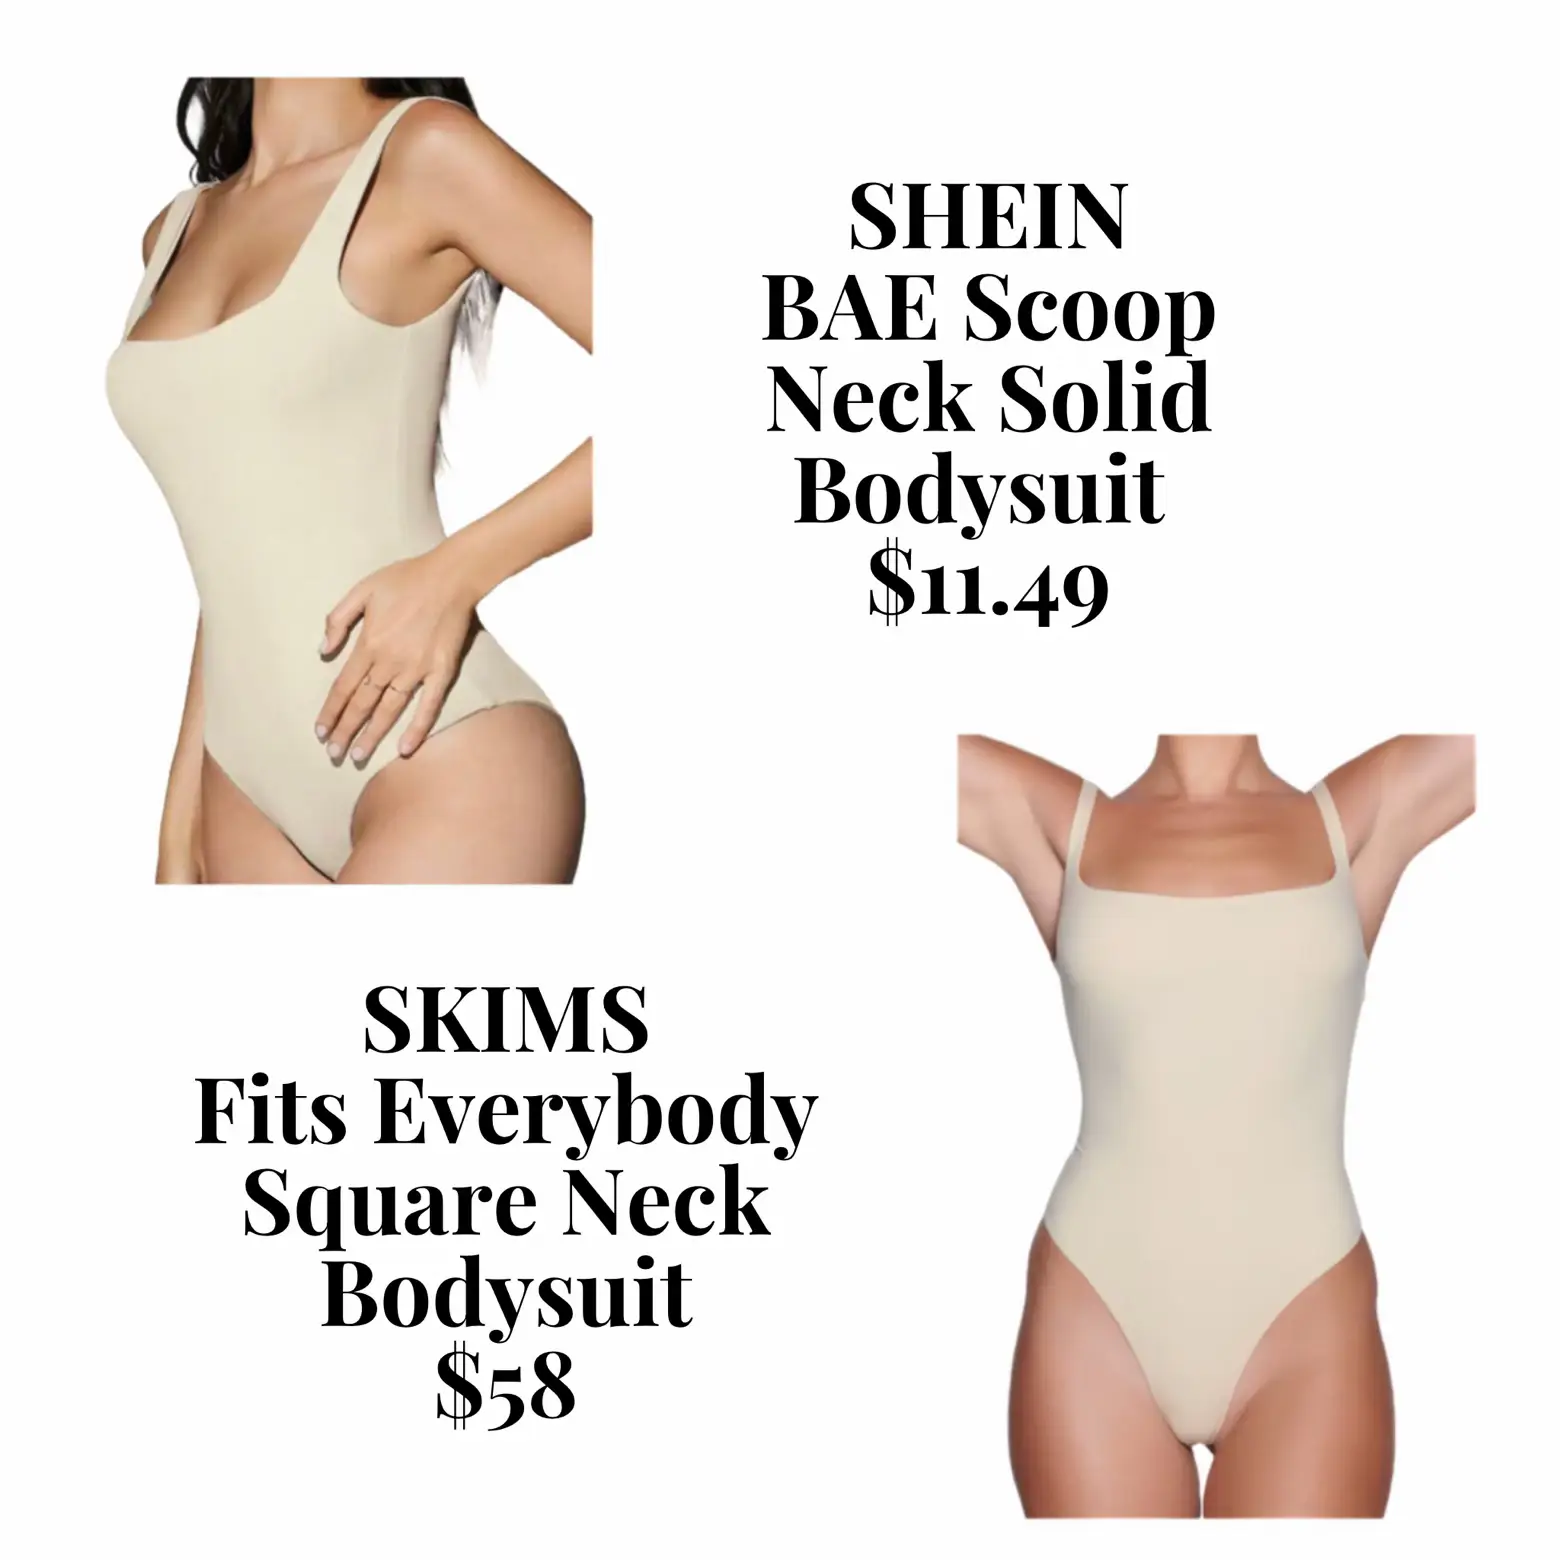 SHEIN BAE 1pc Square Neck Solid Bodysuit